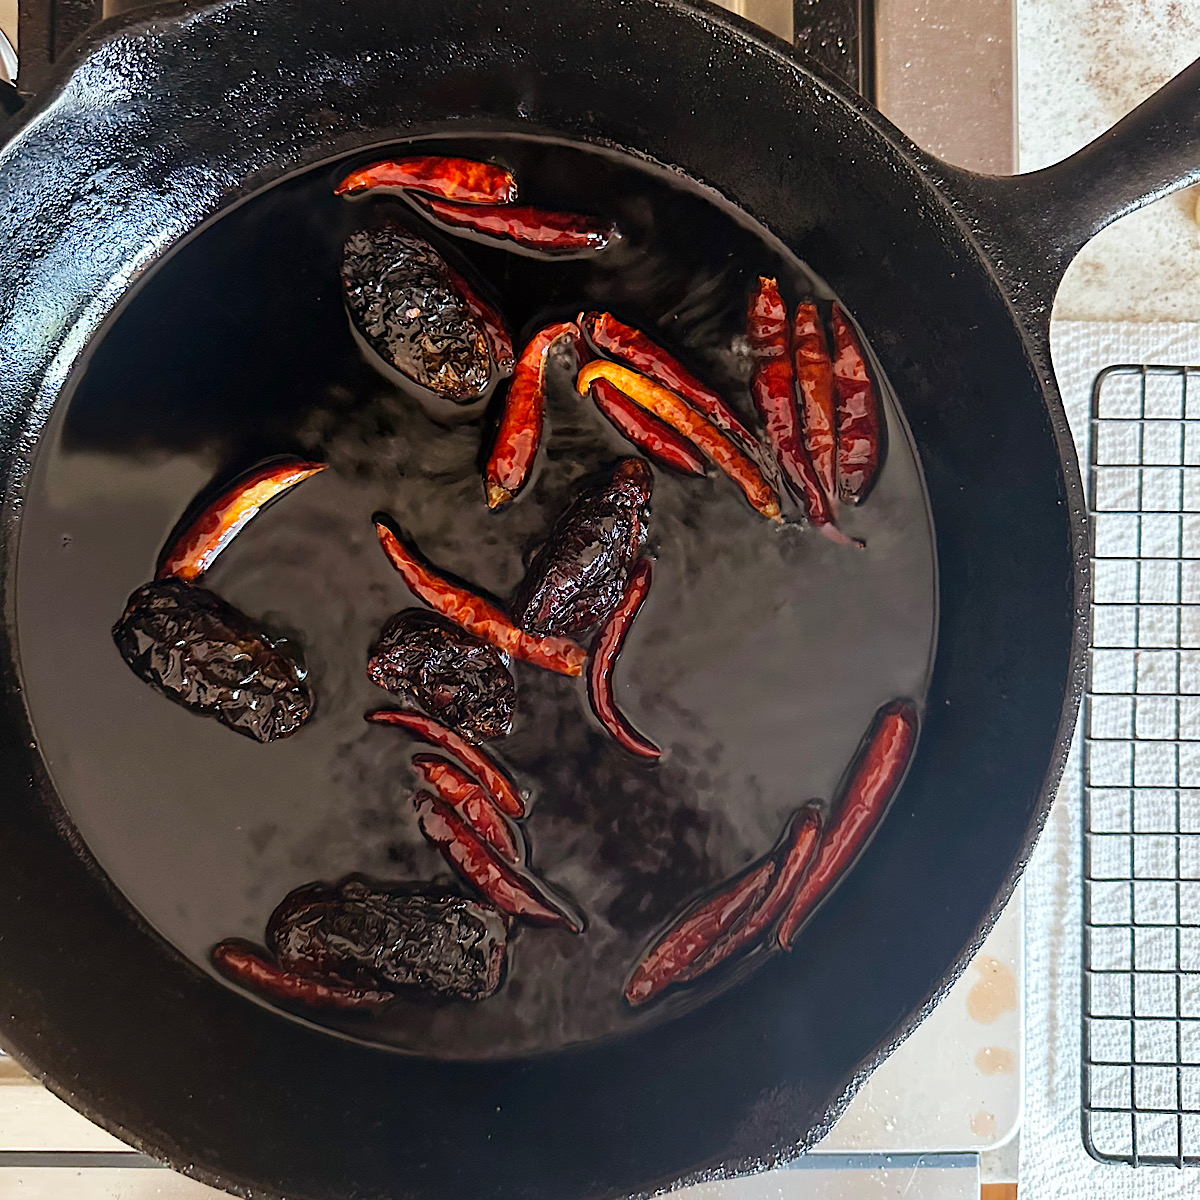 Morita and arbol peppers frying in oil